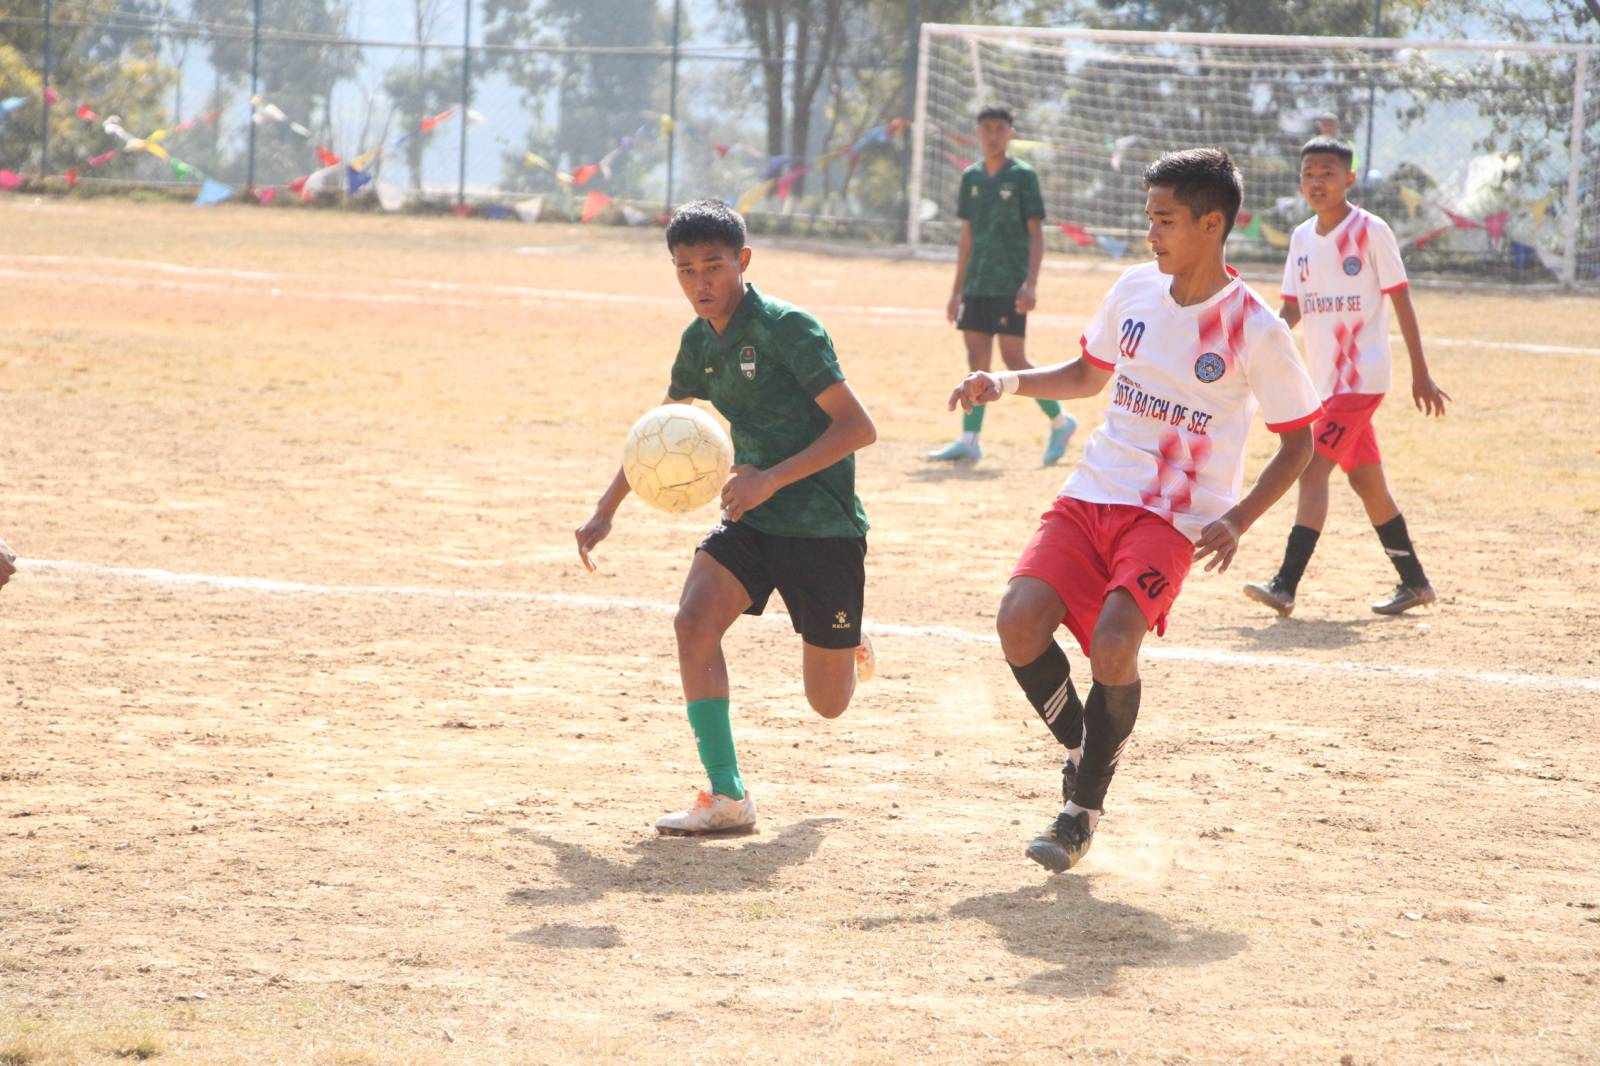 आइजीपी कप फुटबल : उपाधीको लागि सैनिक र ल्याबरोटरी स्कुल भिड्ने